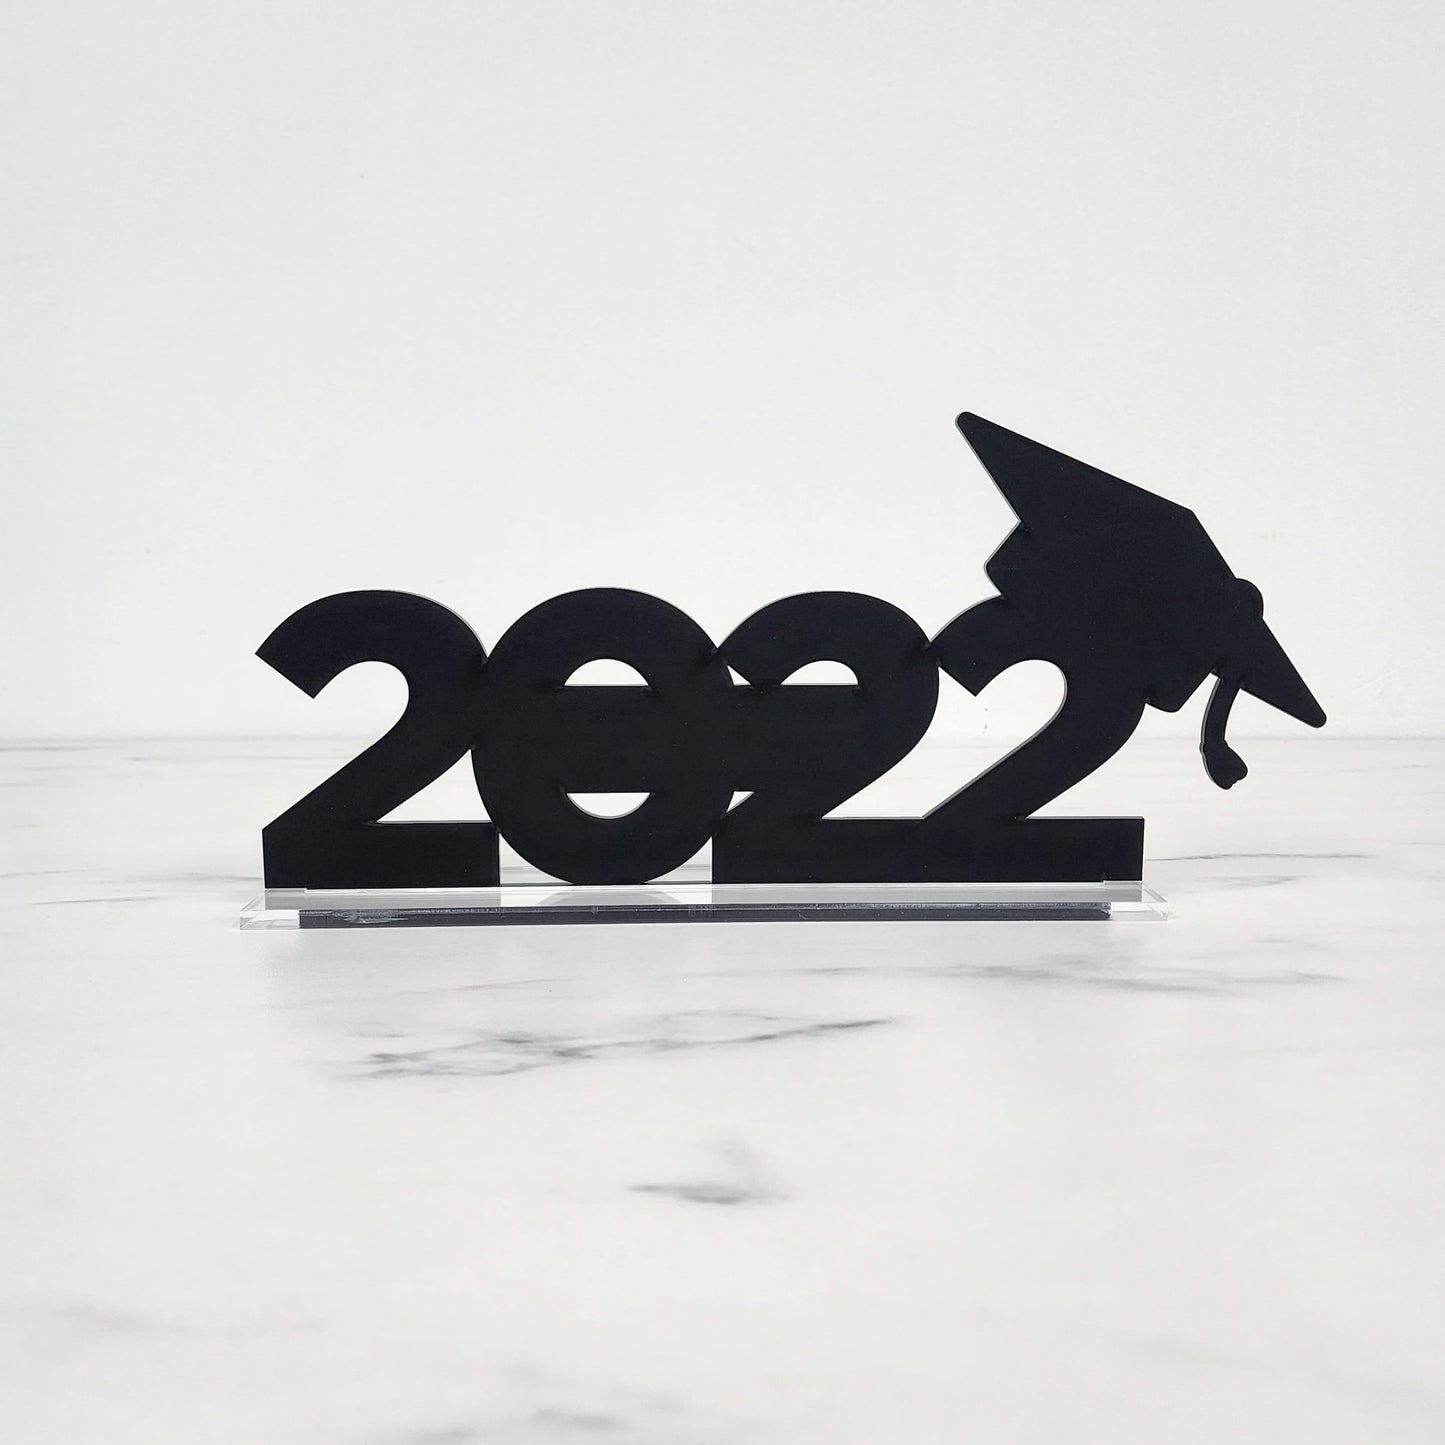 GRAD 2023 Plaque | Blank